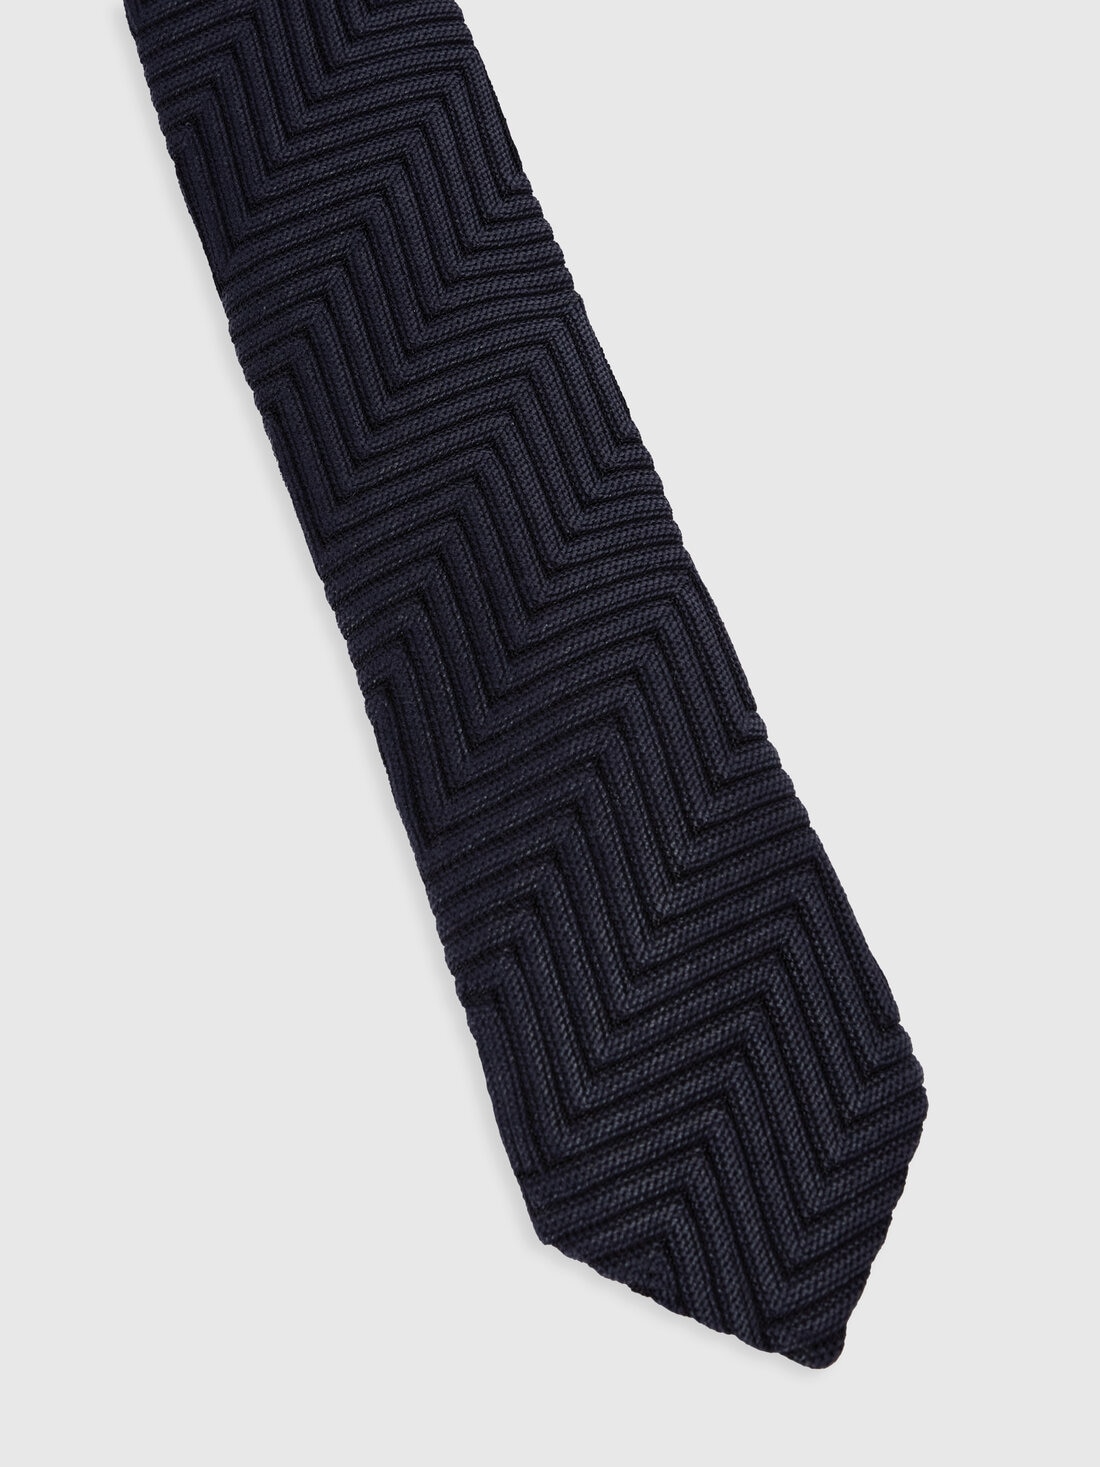 Cotton and viscose chevron tie, Multicoloured  - 8053147141824 - 1